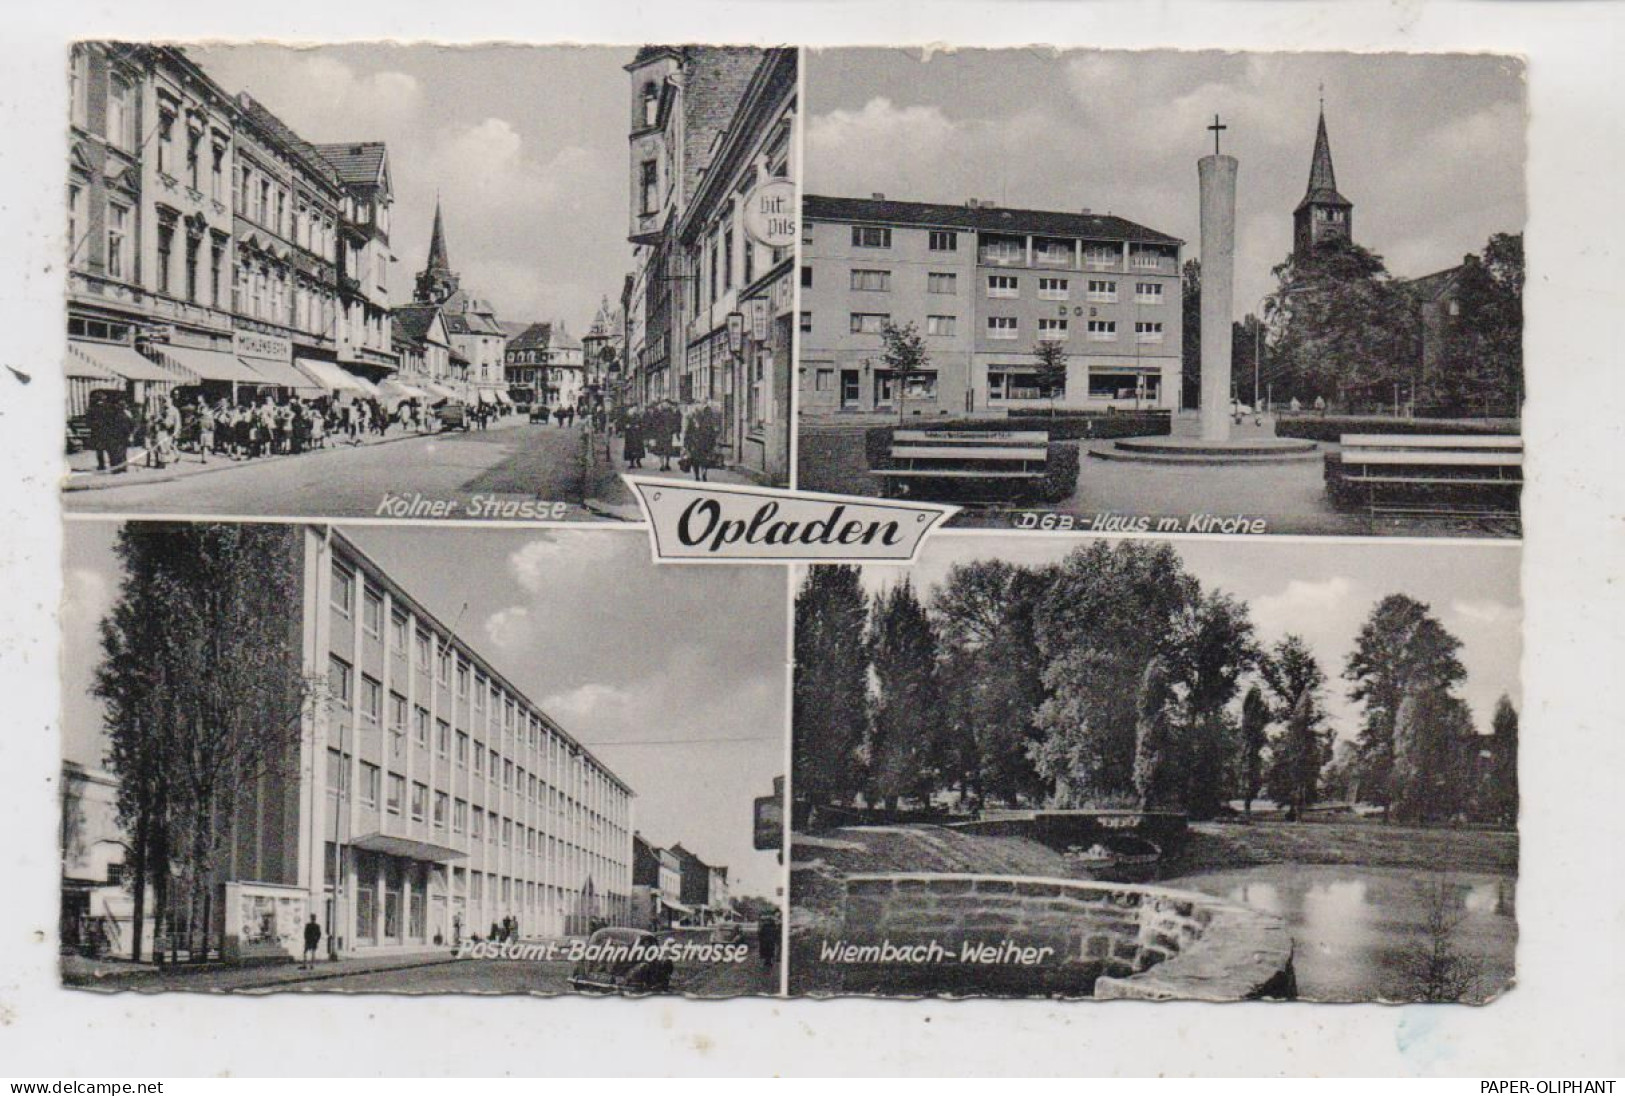 5090 LEVERKUSEN - OPLADEN,  Kölner Straße, DGB-Haus, Postamt-Bahnhofstrasse, Wiembach-Weiher, 1955 - Leverkusen